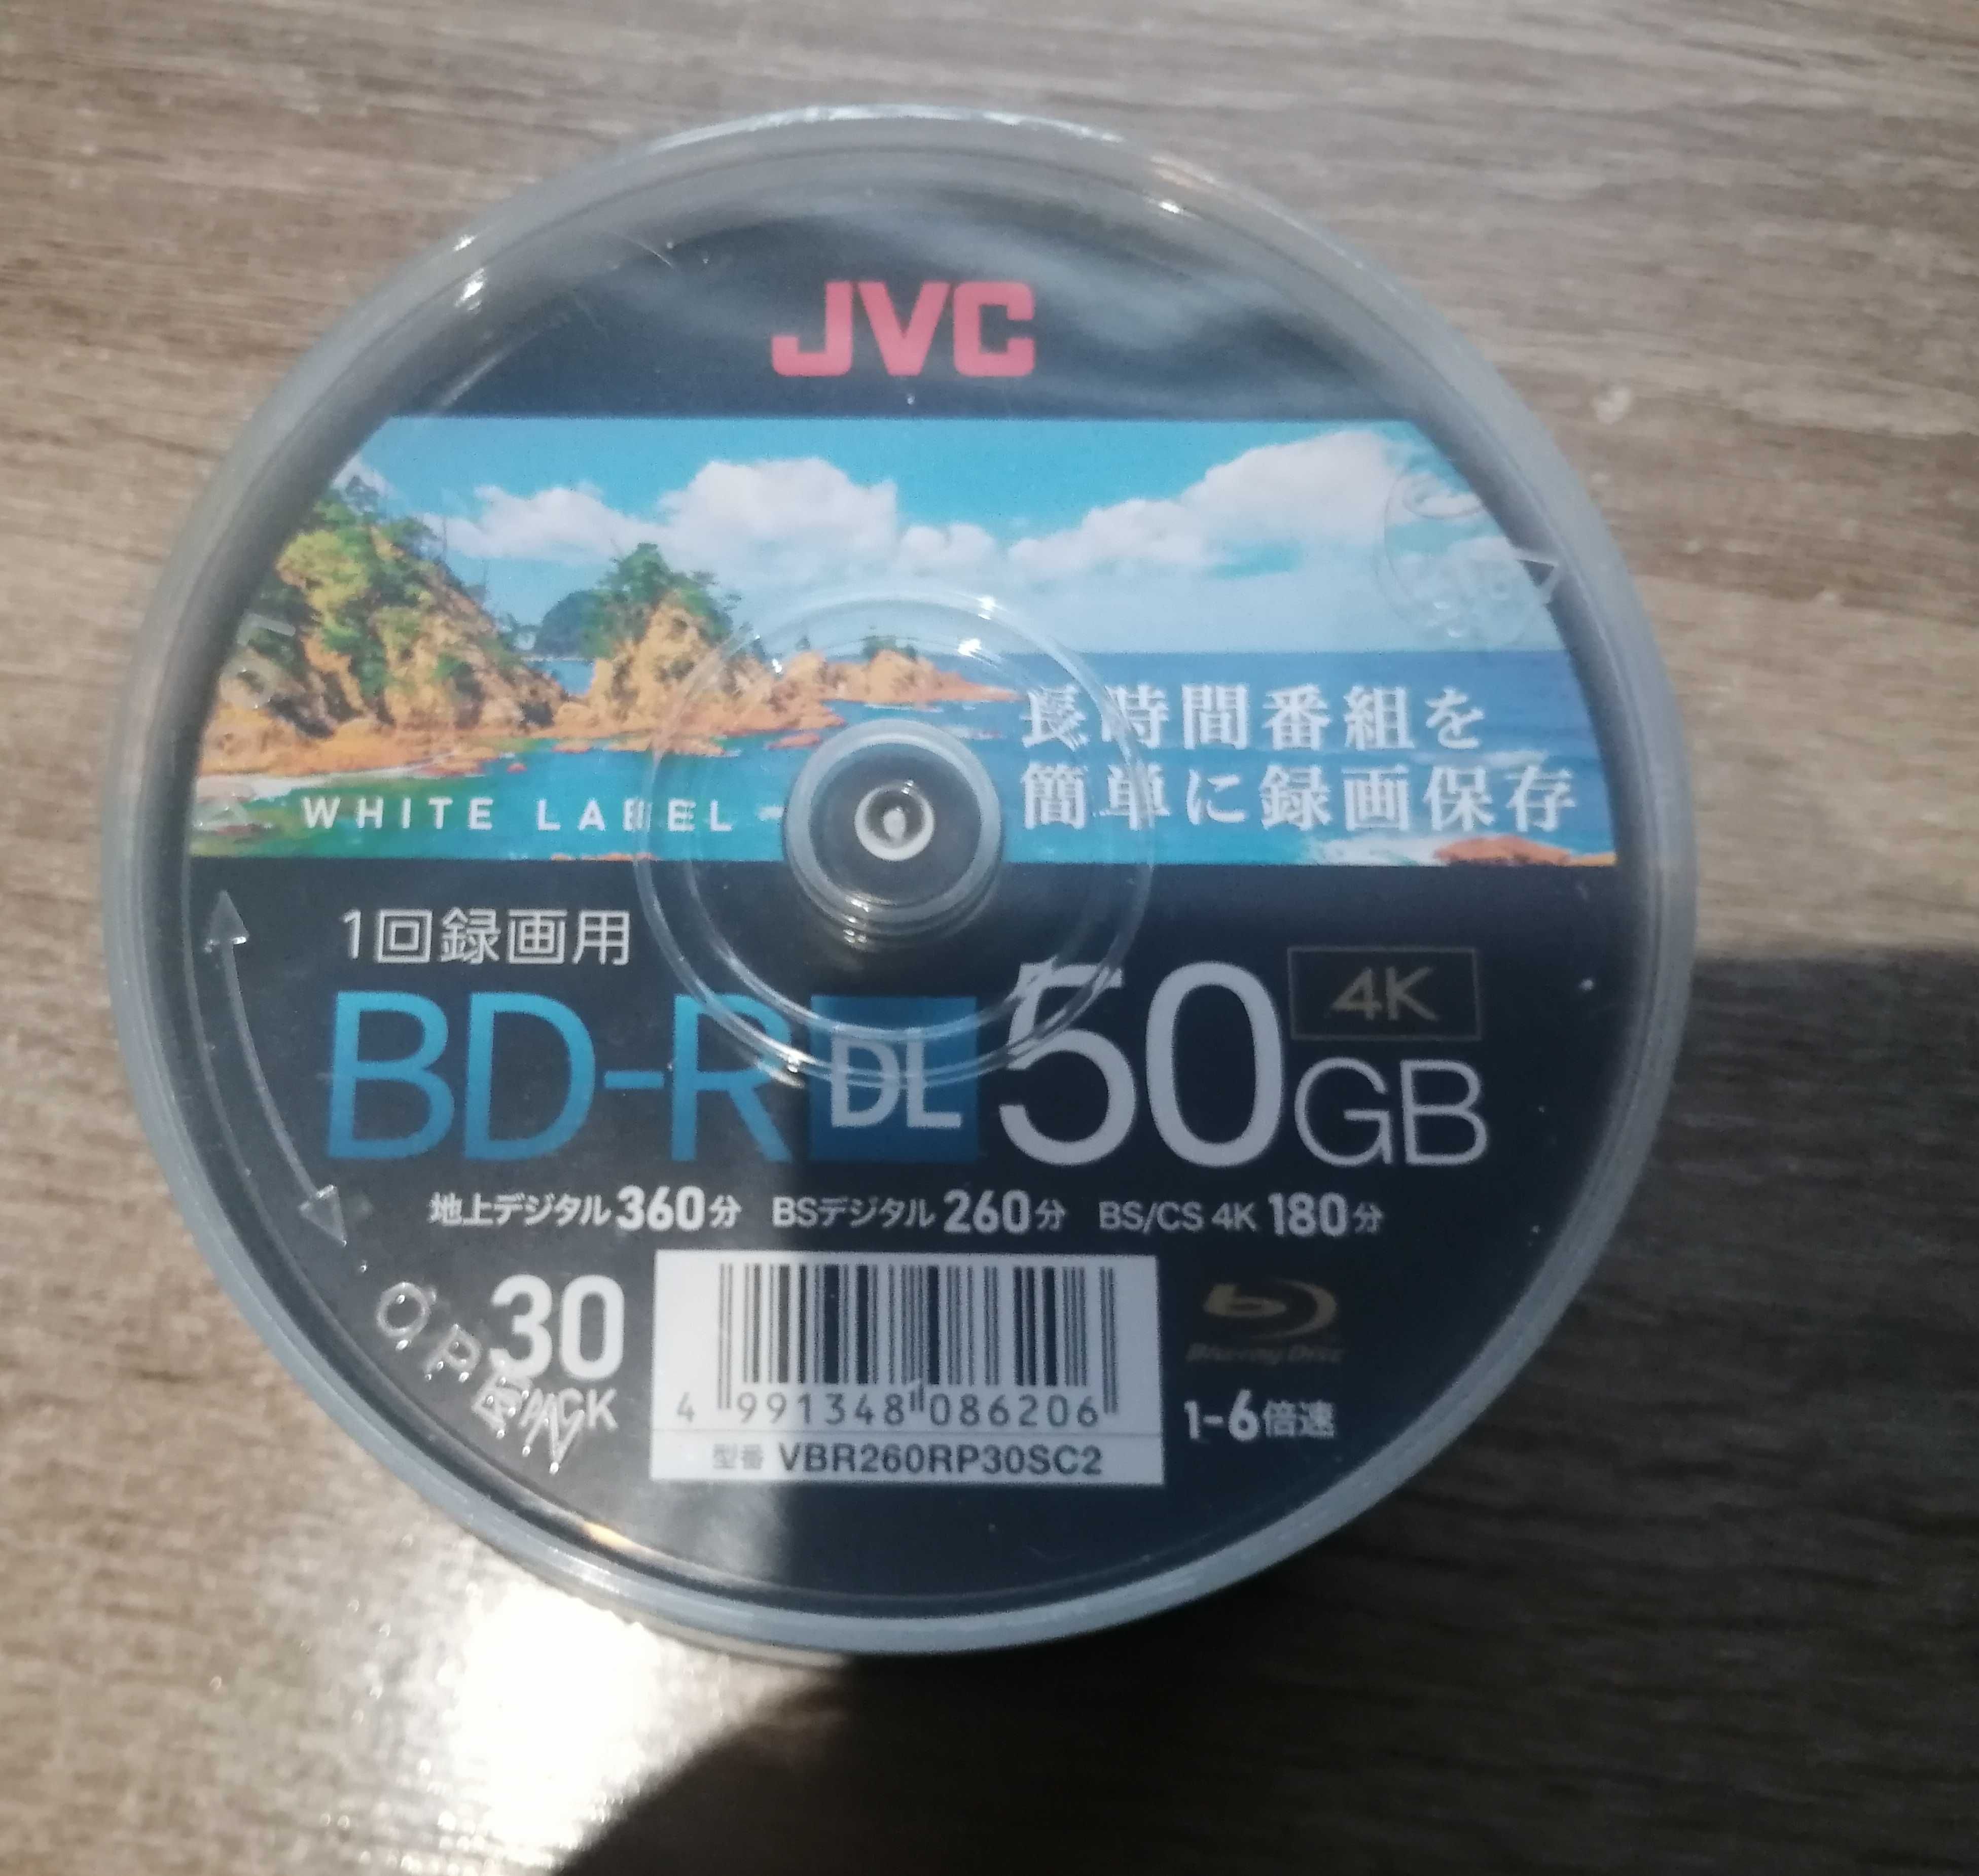 Płyty JVC BD-R DL 50 GB do nadruku. Nierozpieczętowane. Z Japonii. 30